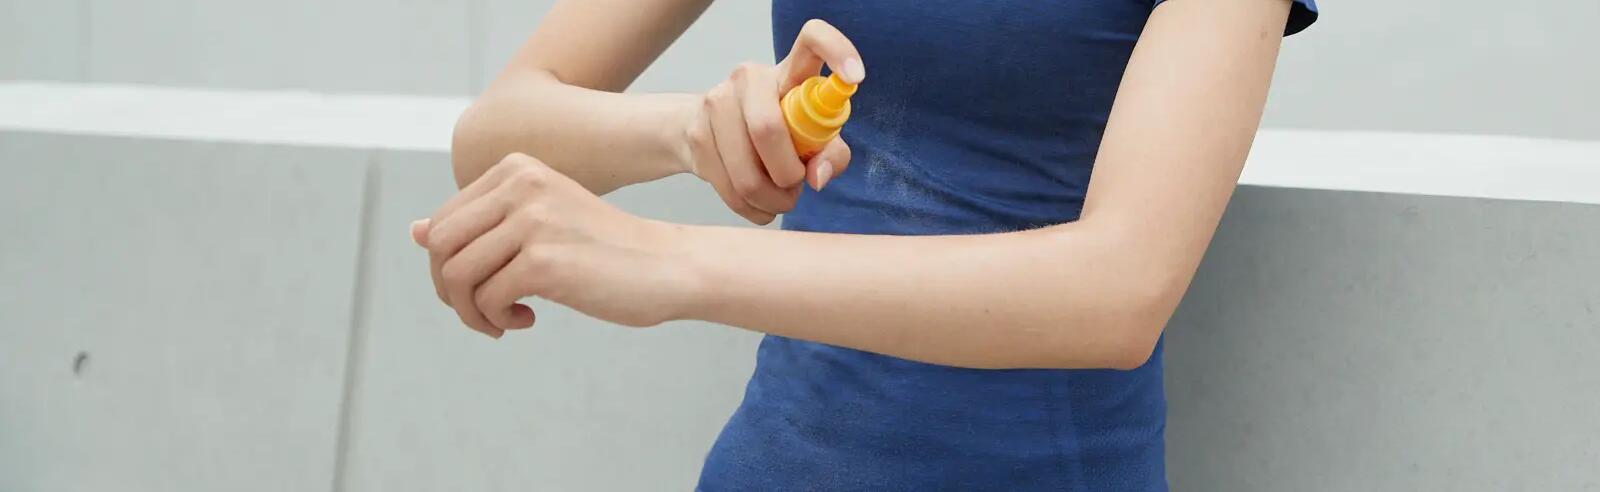 Une femme qui applique de la crème solaire sur son bras